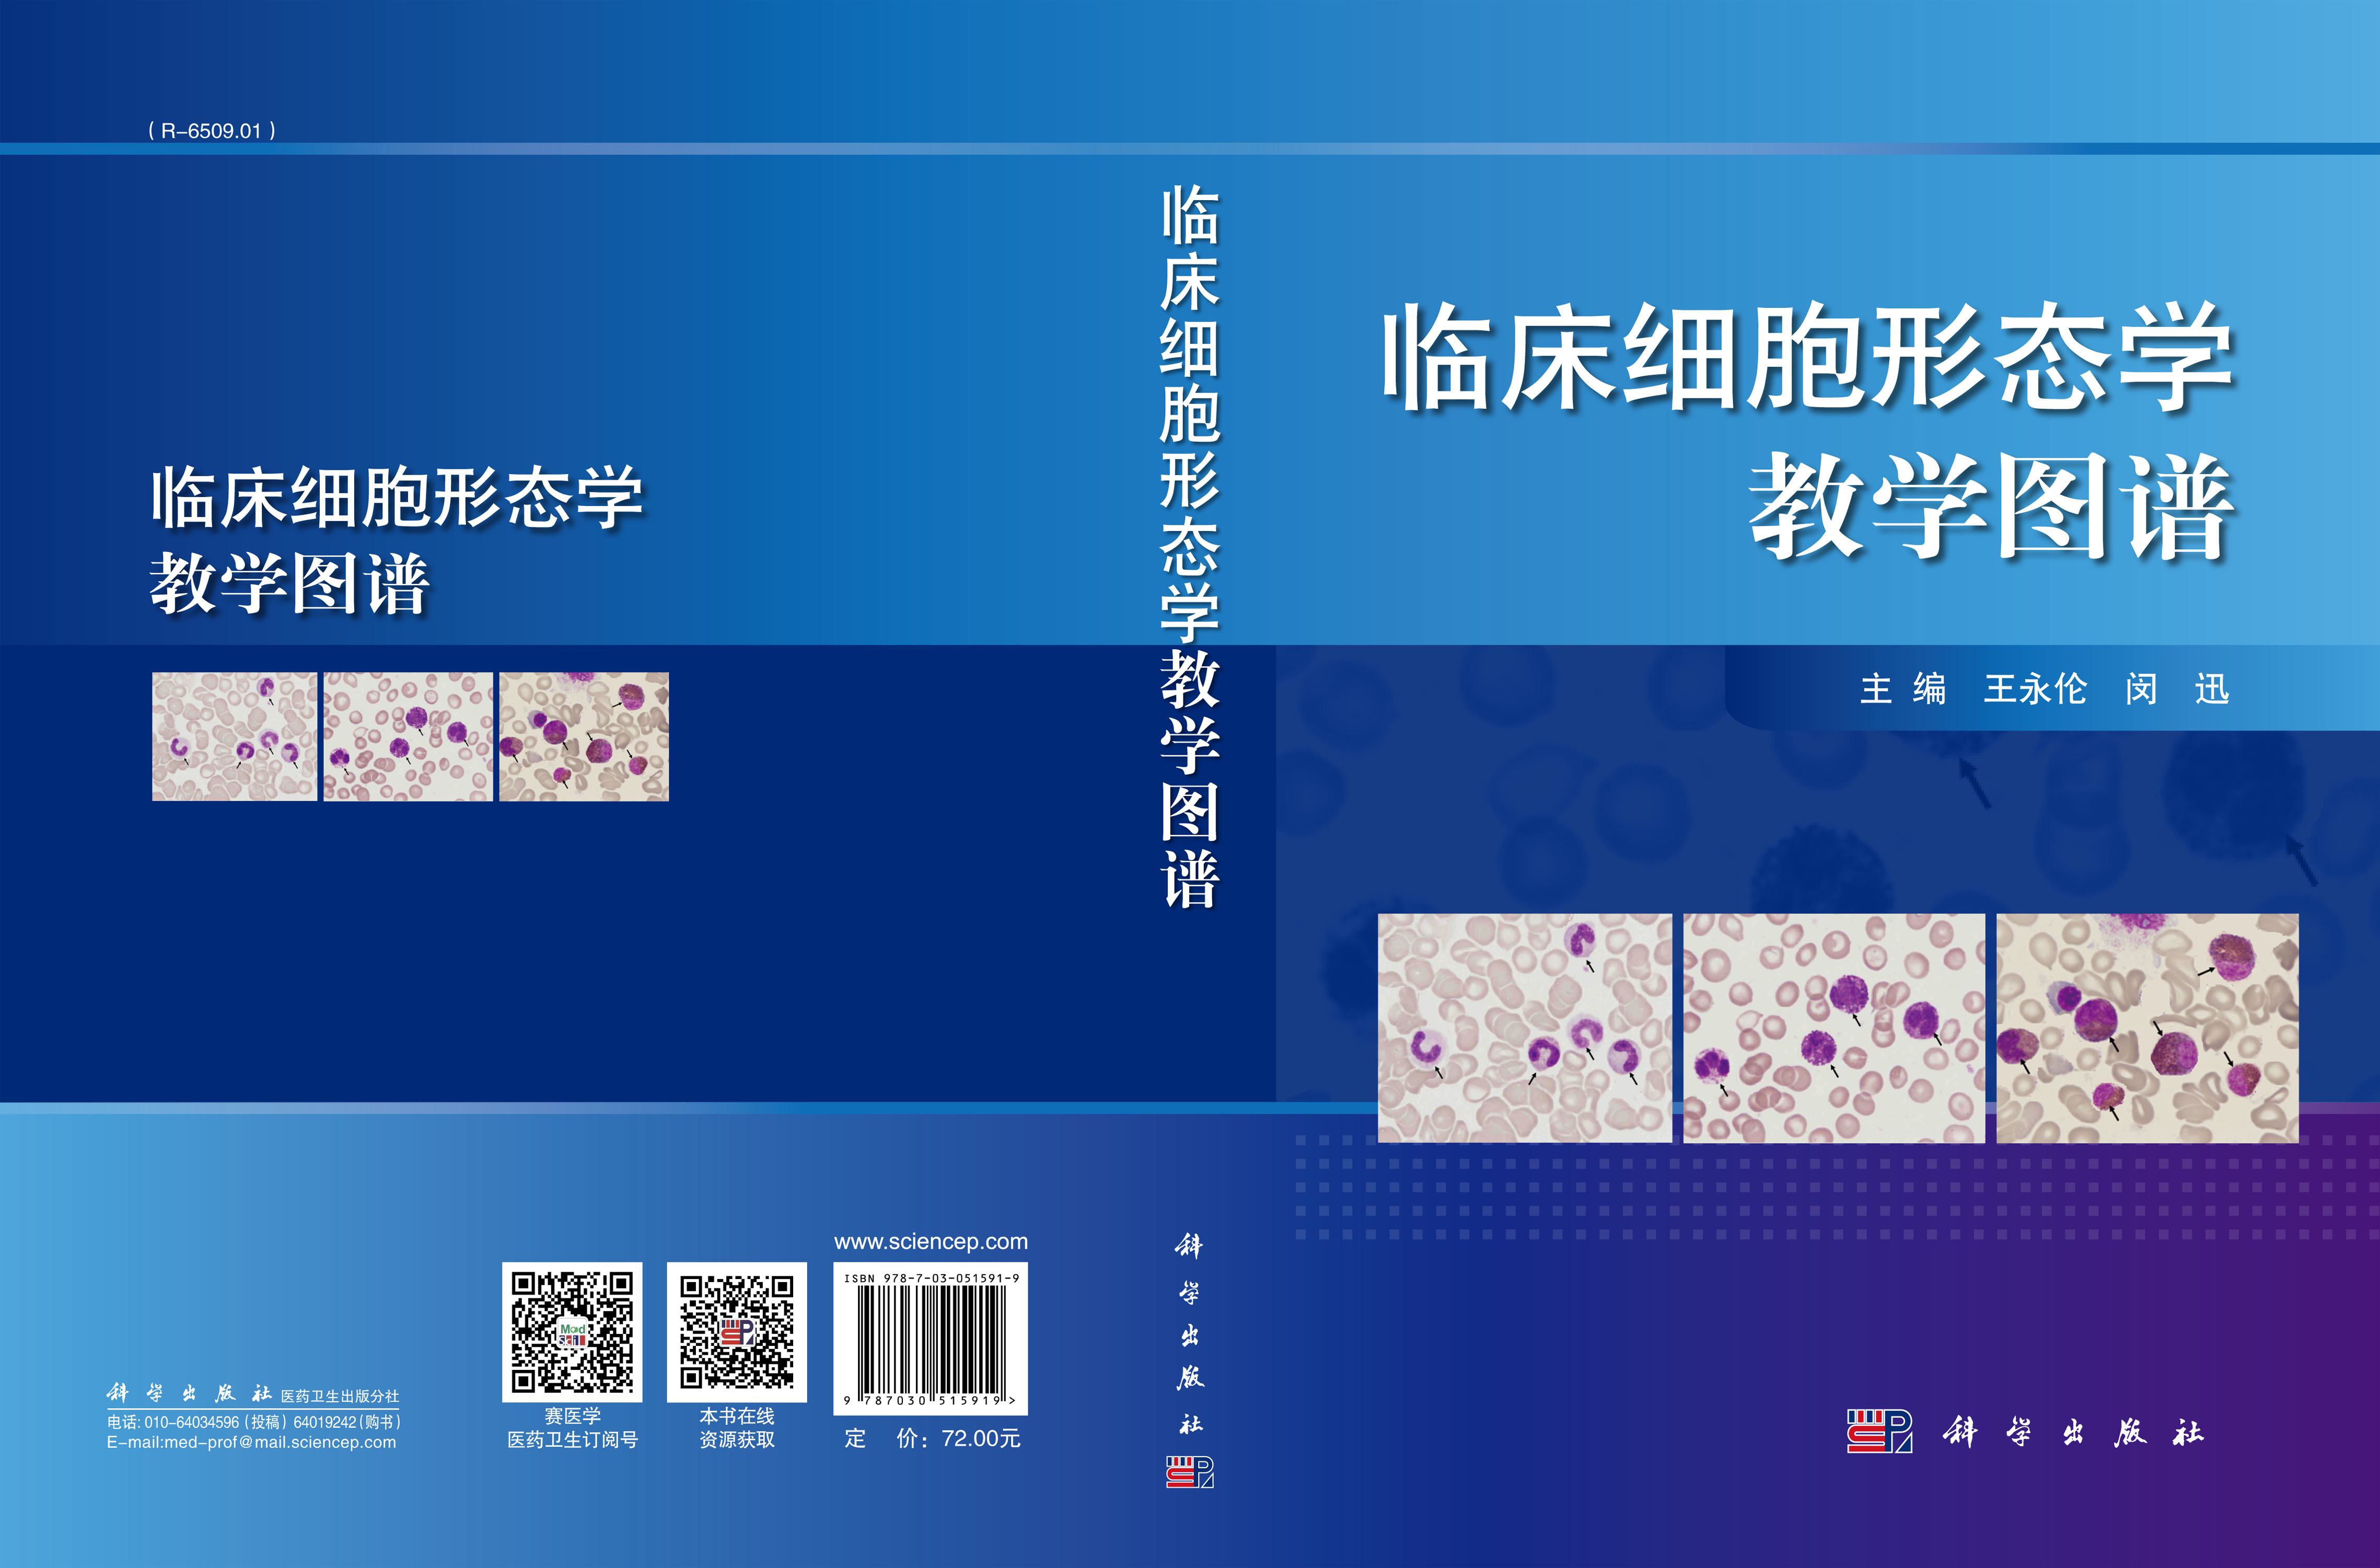 临床细胞形态学教学图谱